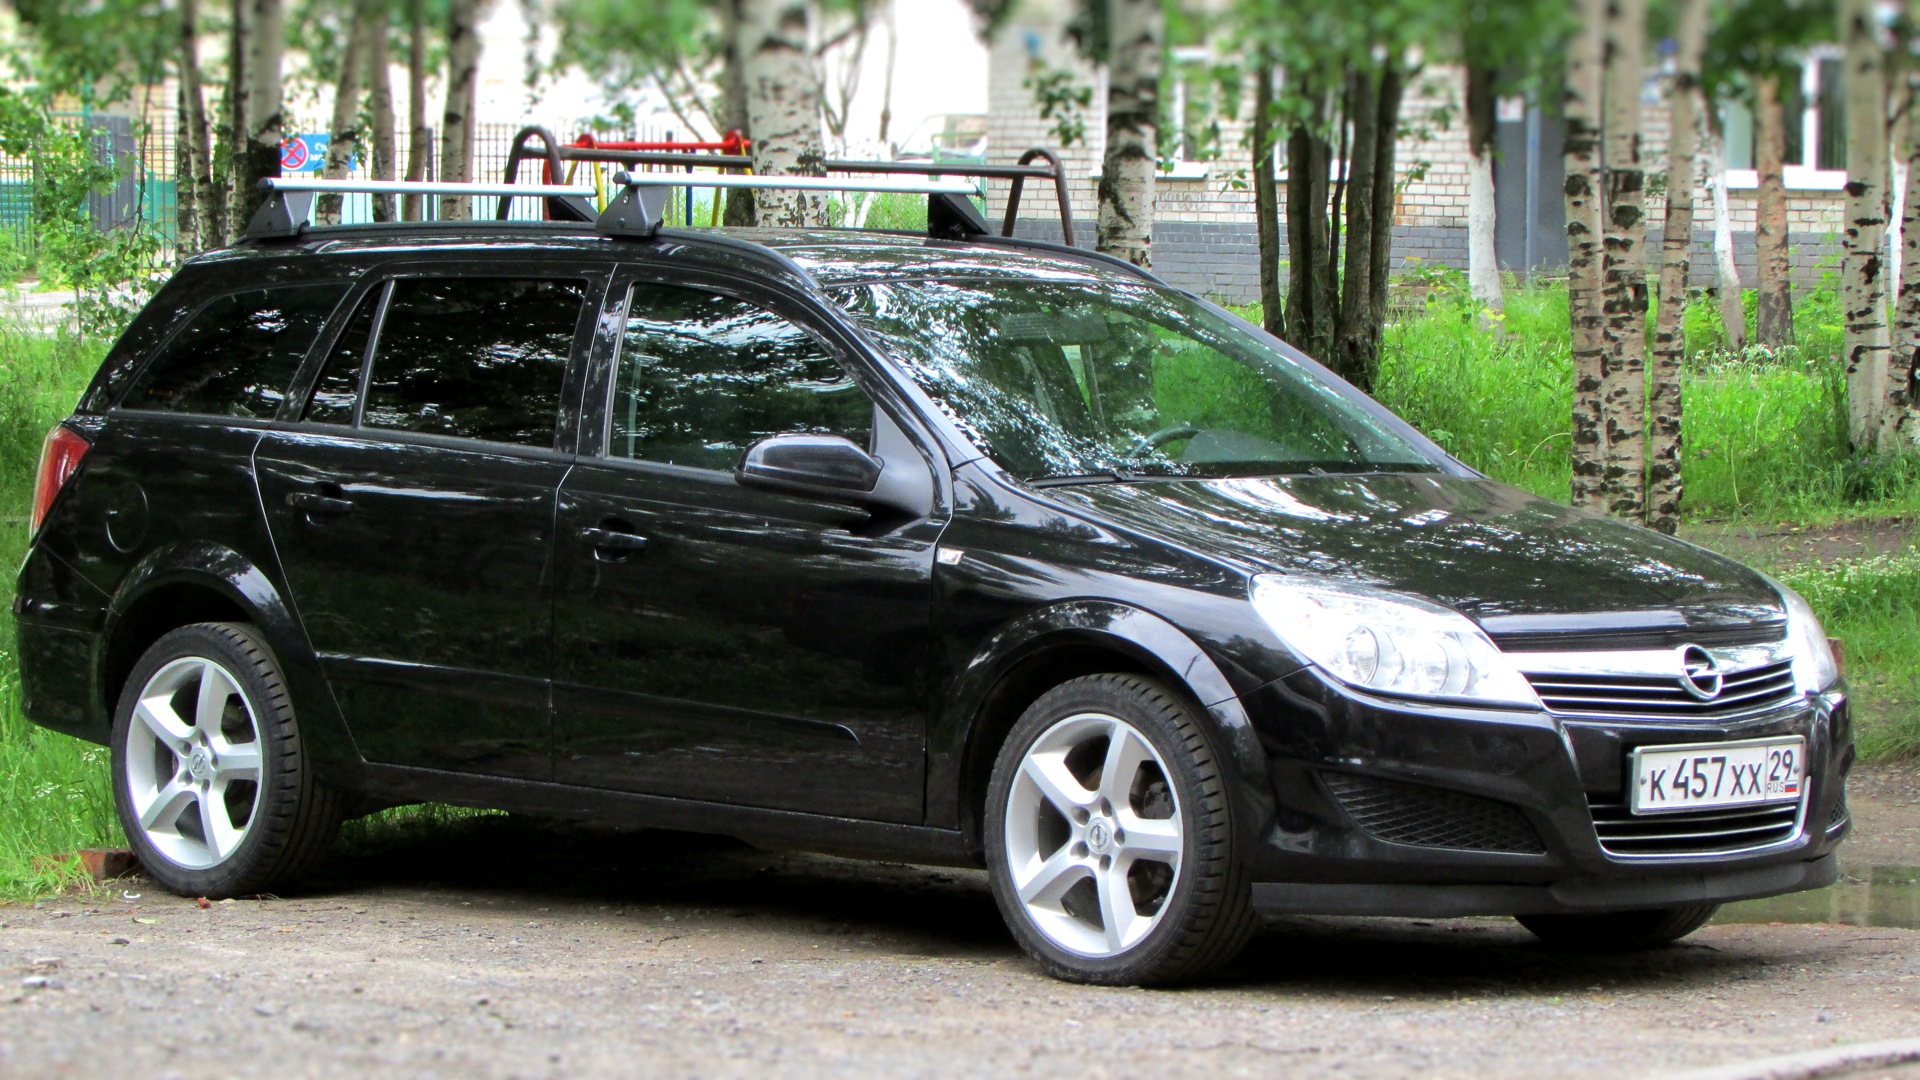 Колесо опель универсал. Opel Astra Caravan 2008. Opel Astra h 2007 универсал. Opel Astra h универсал r17. Opel Astra h универсал черный.